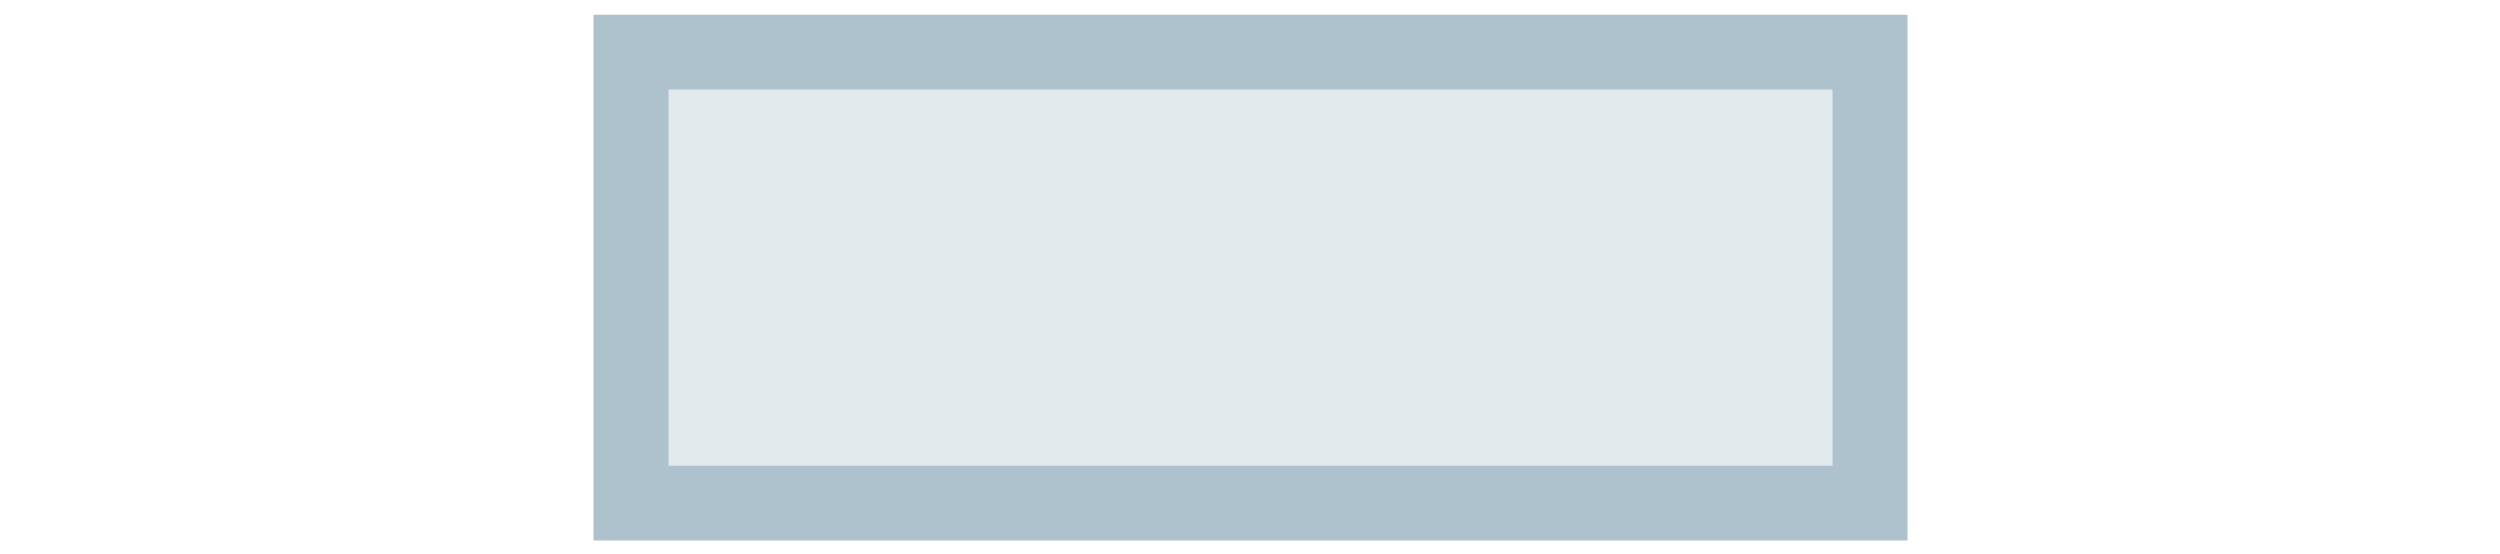 Haut de pochette header A5 magnétique gris-bleu